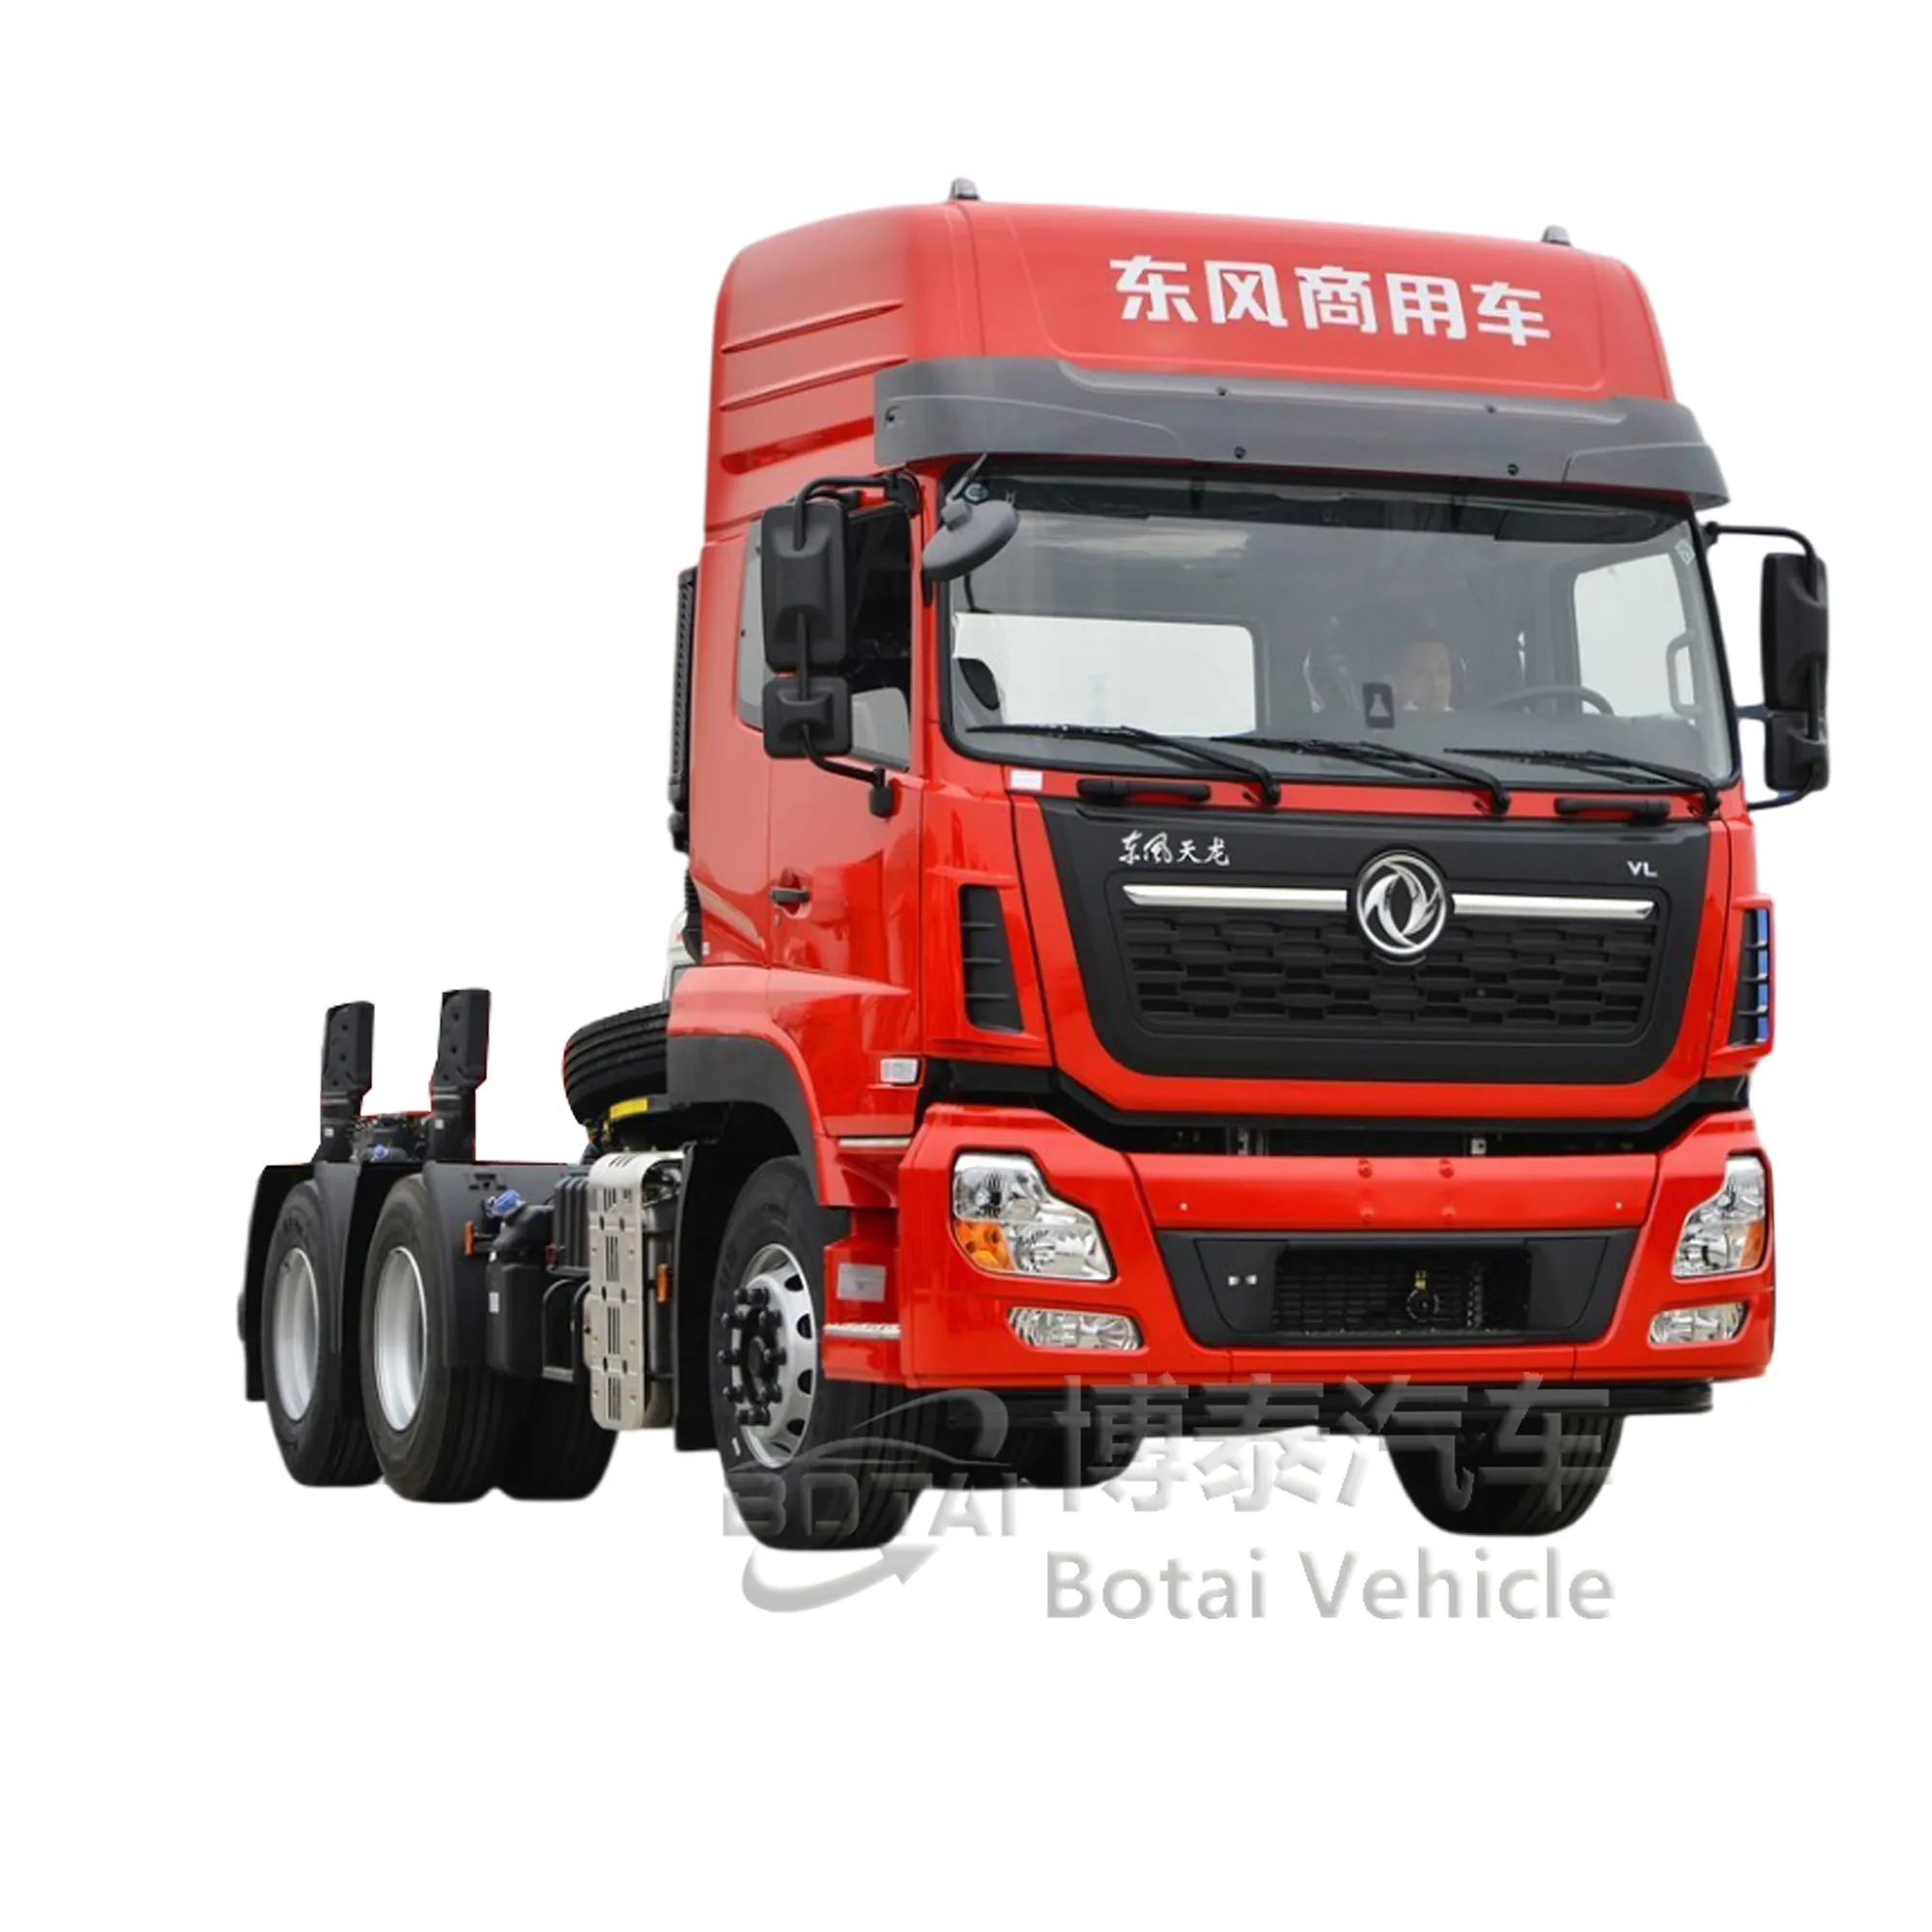 गर्म प्रयुक्त कीमत चीन ट्रक 371 420 एचपी प्राइम मूवर नया ट्रक हेड 4x2 6x4 ट्रैक्टर ट्रक अधिकतम ट्रैक्शन वजन 35-40 टन के साथ